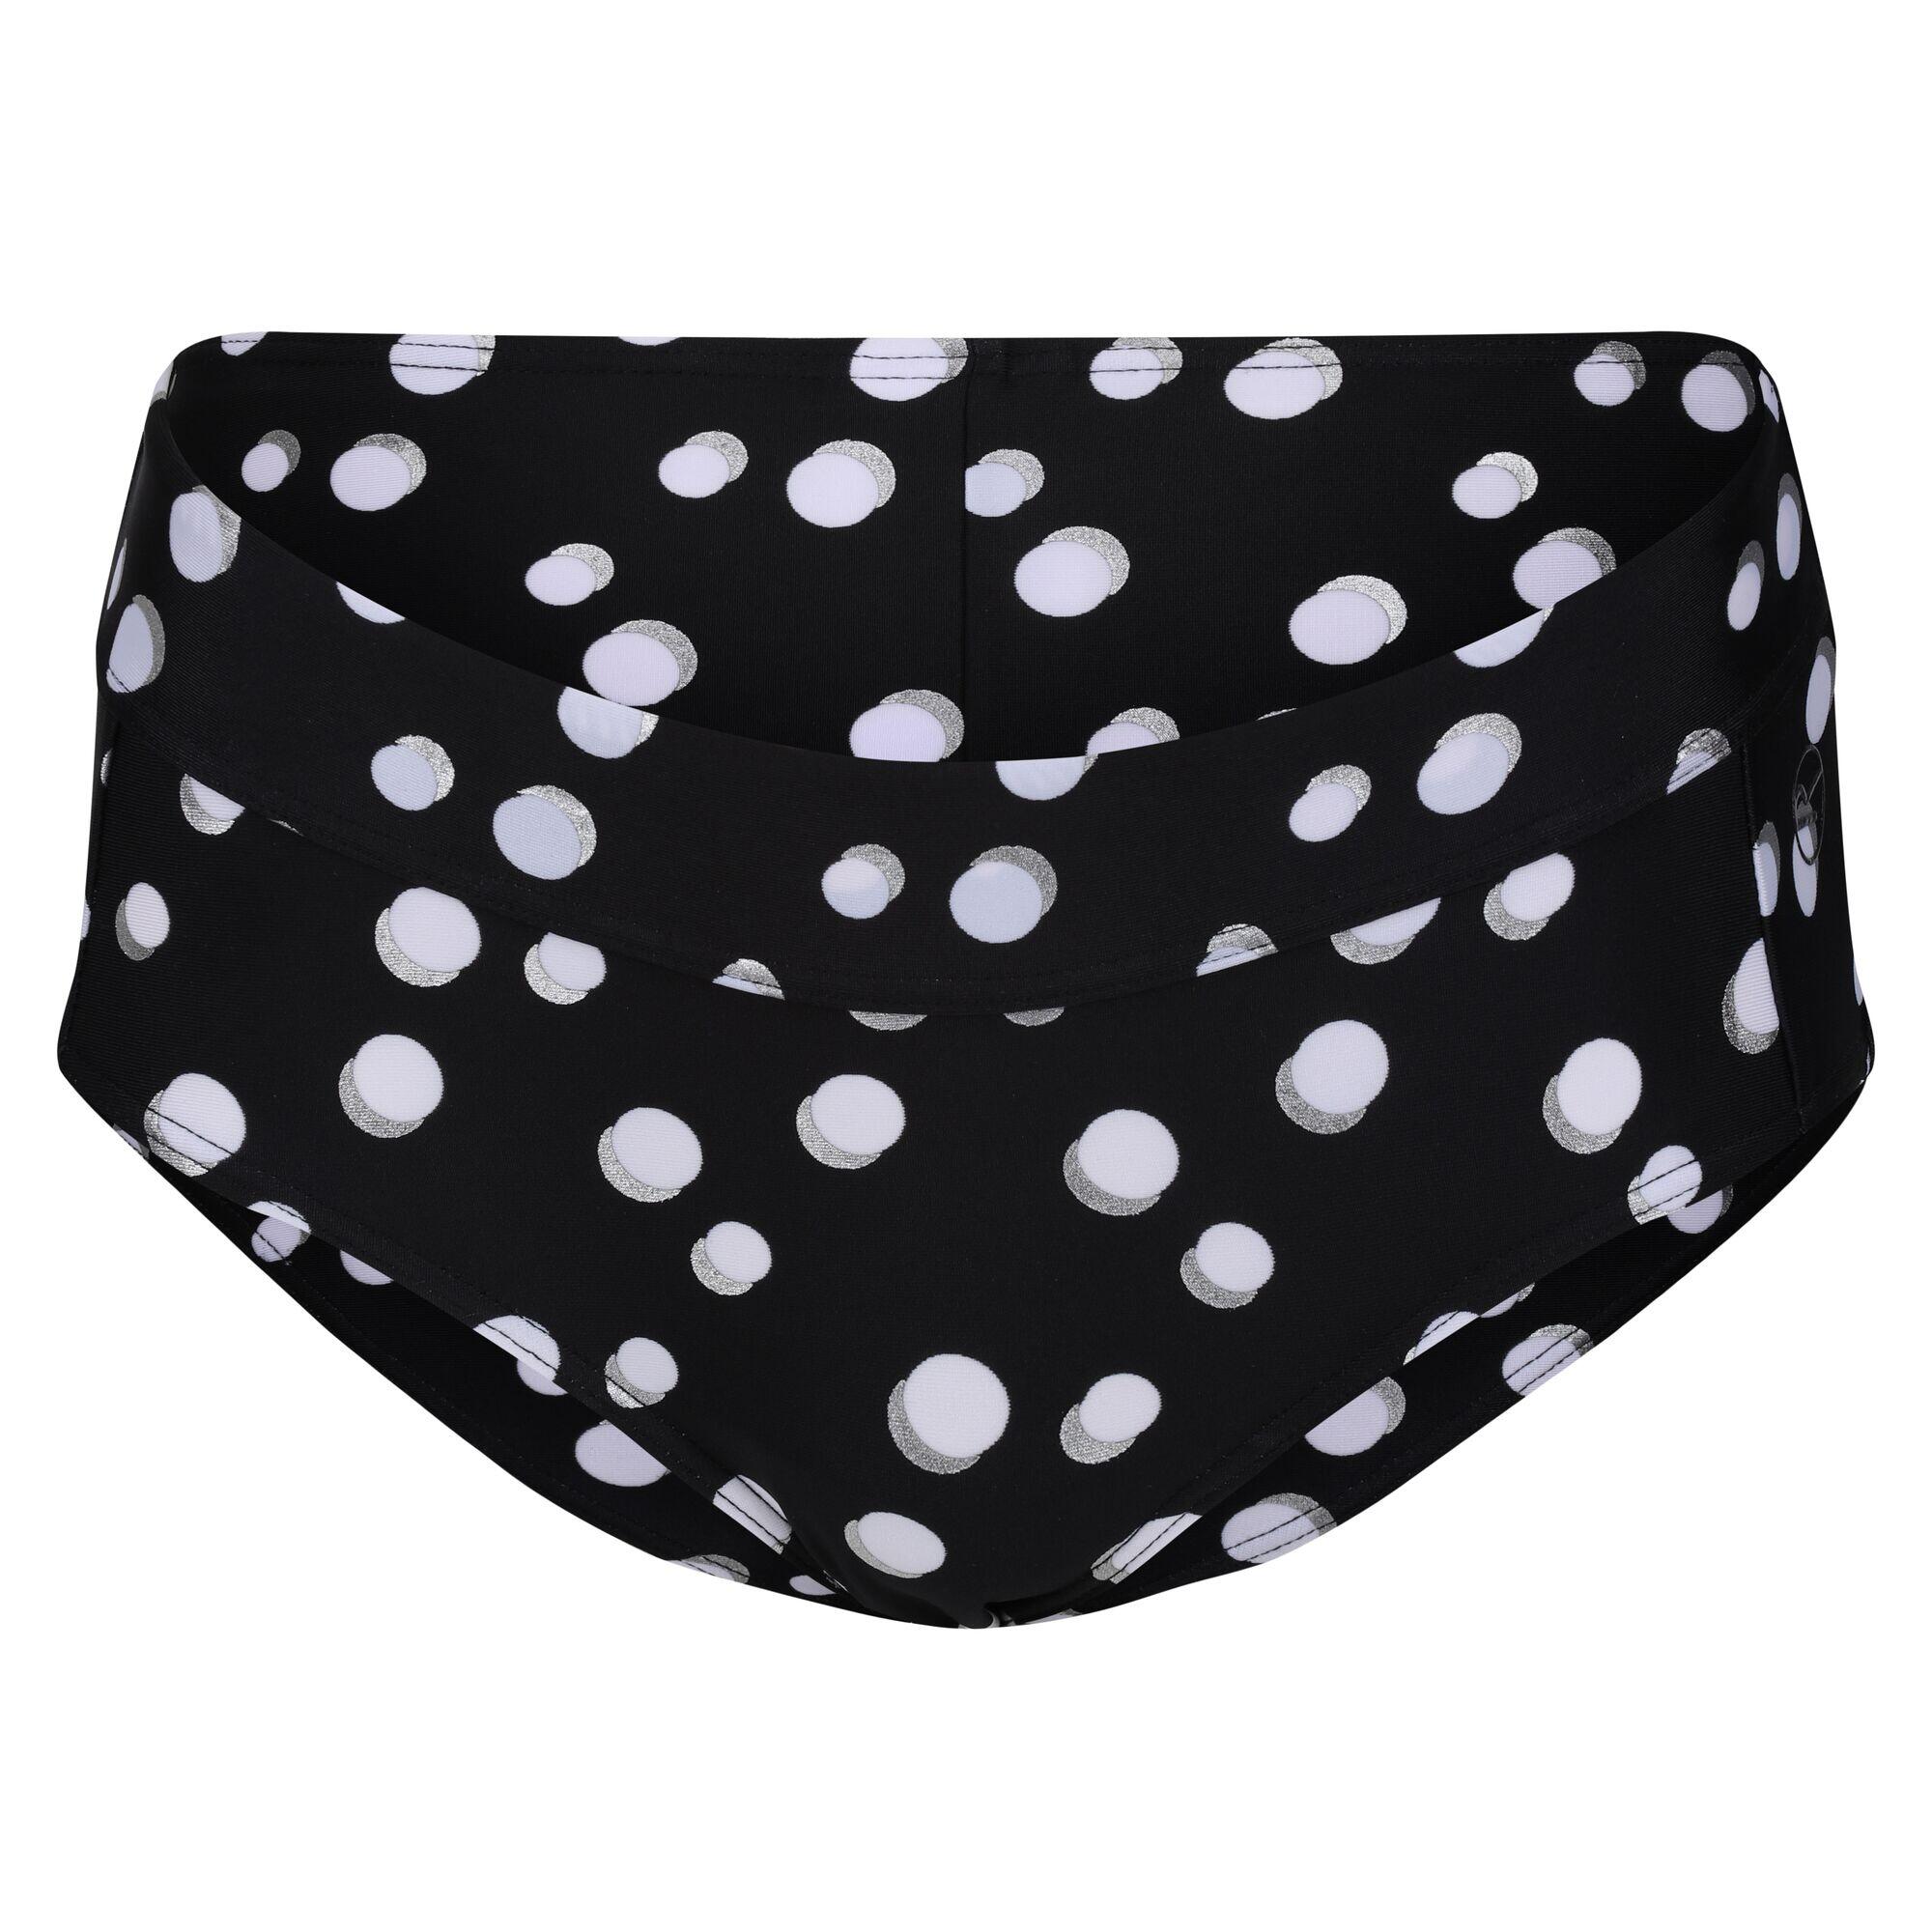 REGATTA Womens/Ladies Paloma Polka Dot Bikini Bottoms (Black/White)